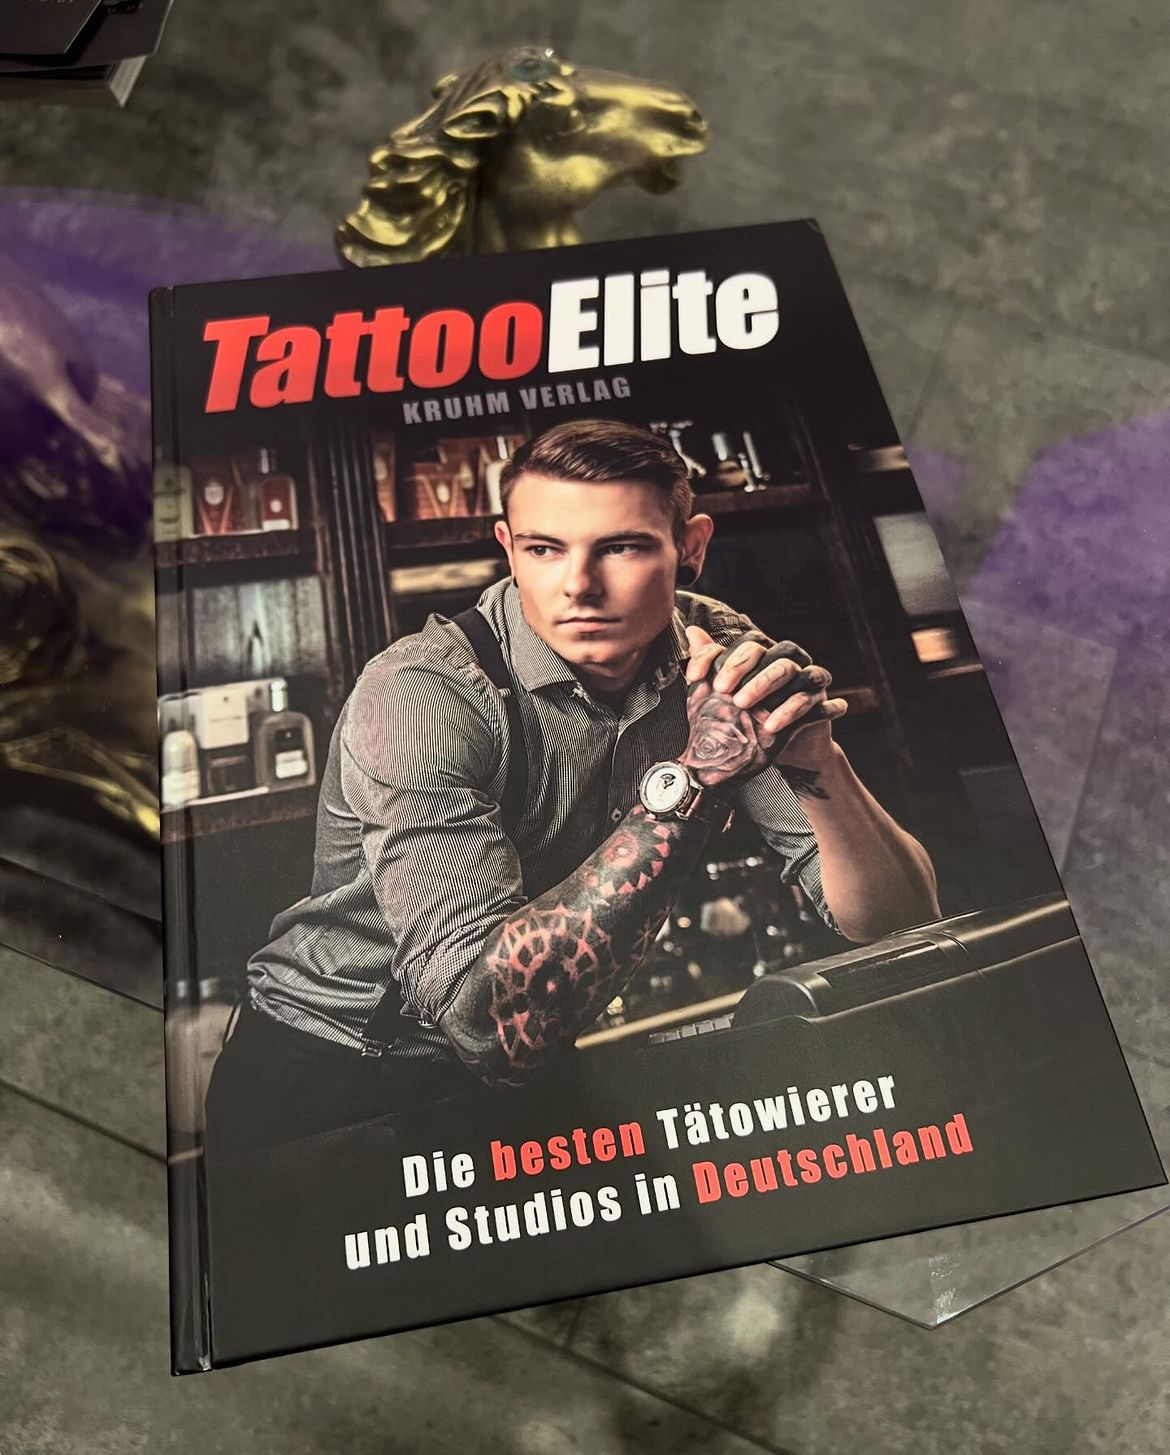 Das Buch Tattoo Elite das die besten Tätowierer und Studios in Deutschland auszeichnet.